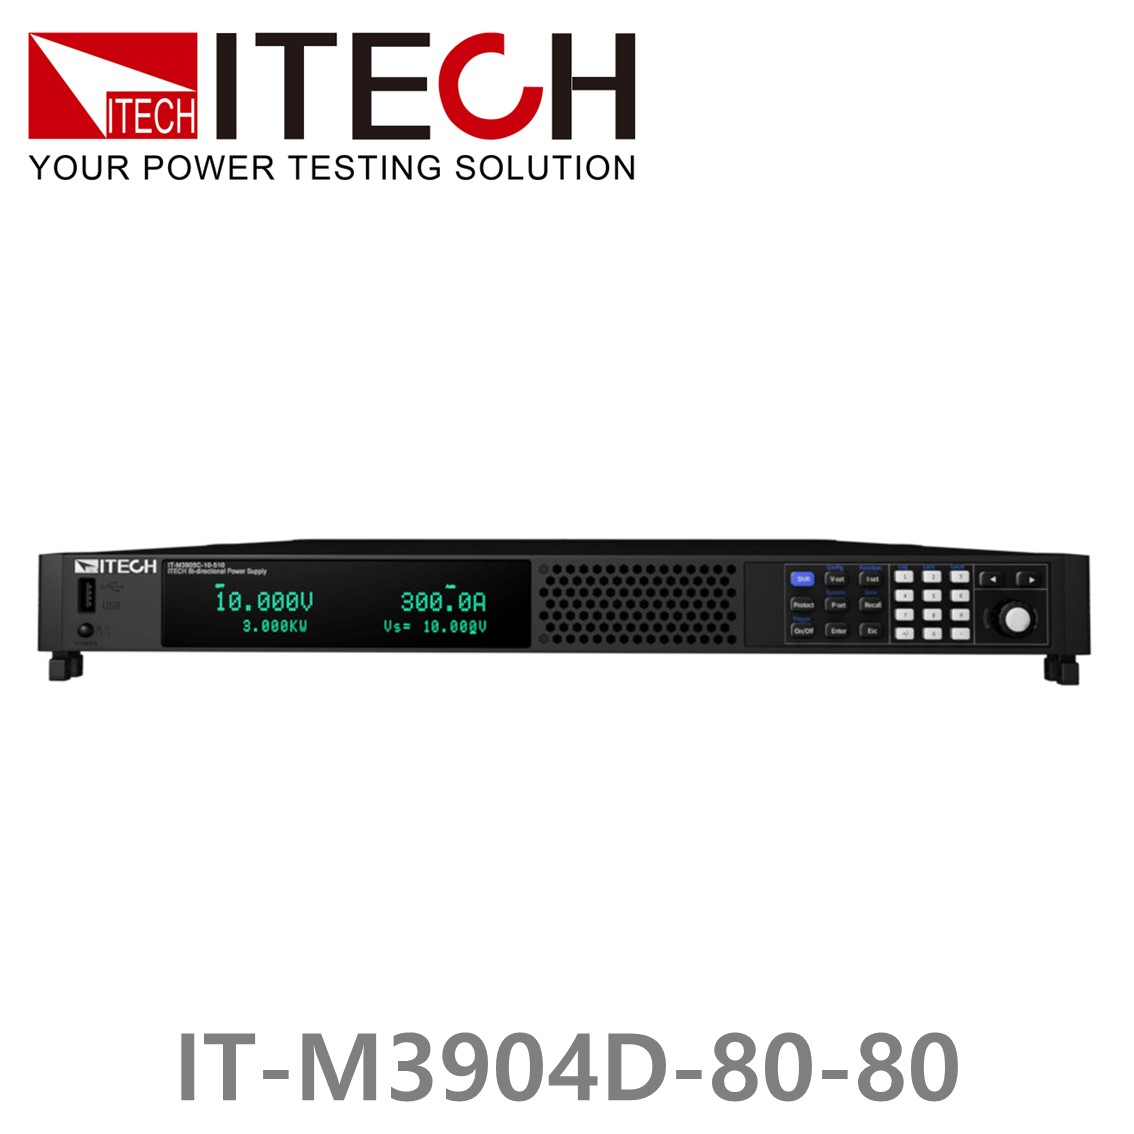 [ ITECH ] IT-M3904D-80-80 양방향 프로그래머블 DC전원공급기, DC파워서플라이